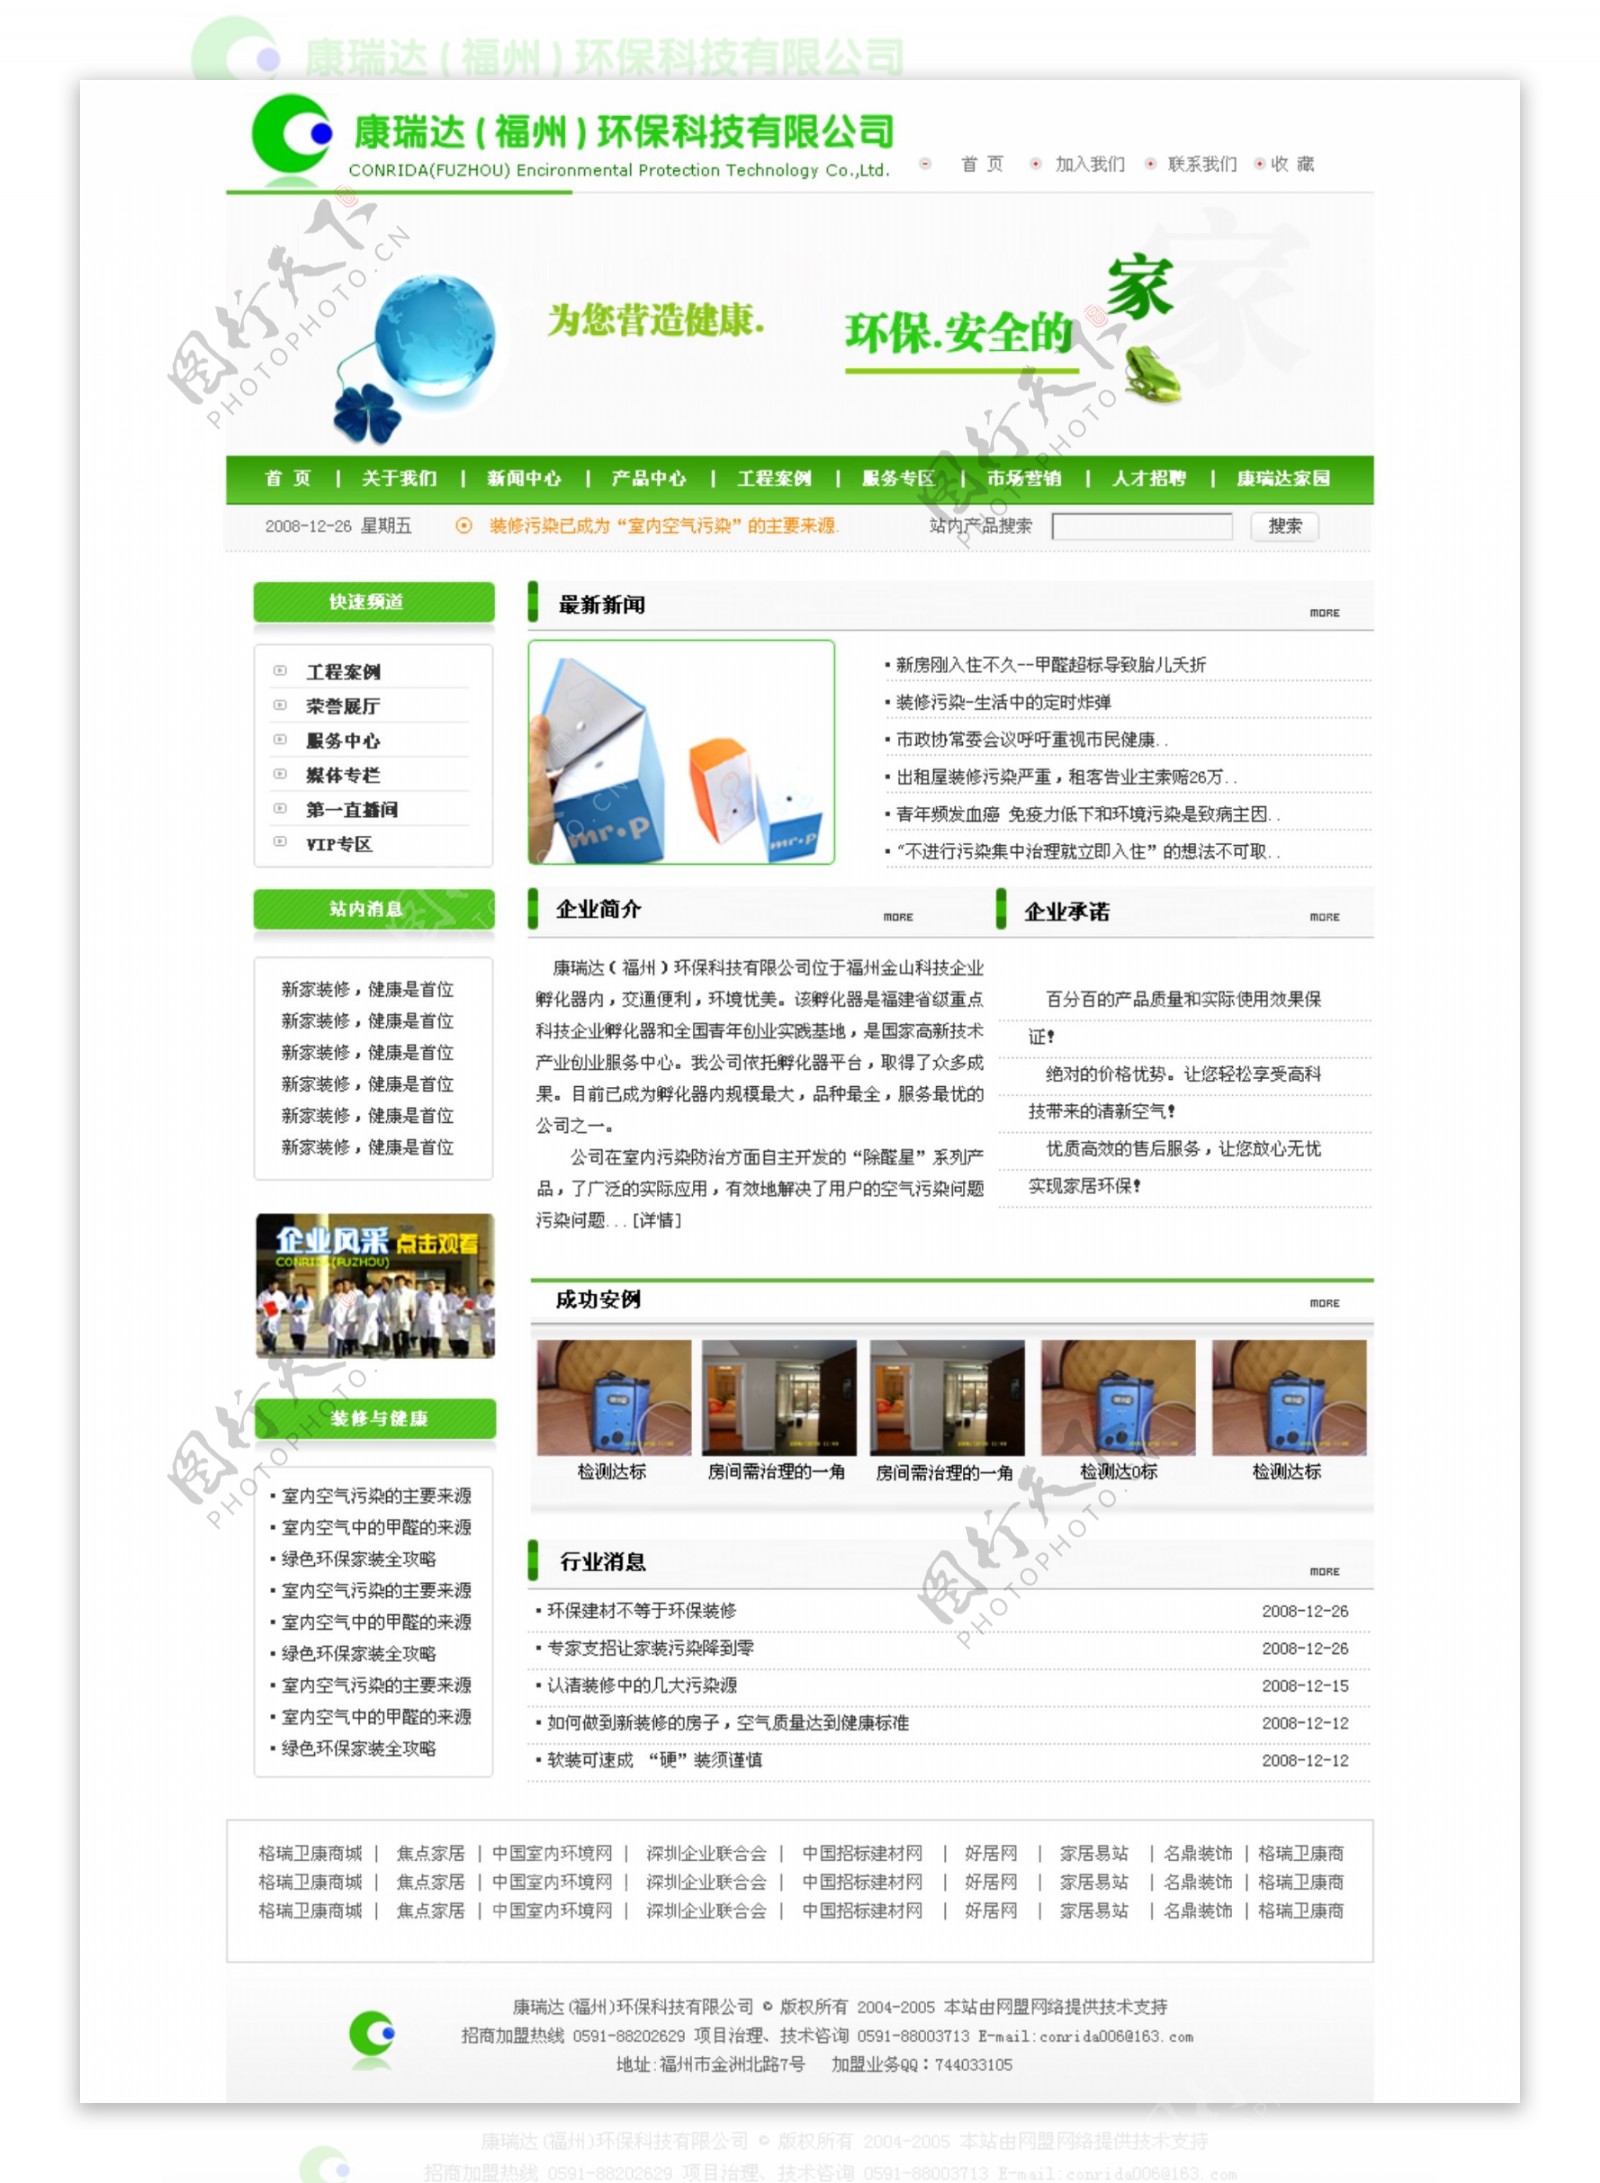 福州某环保科技公司网页模板二图片